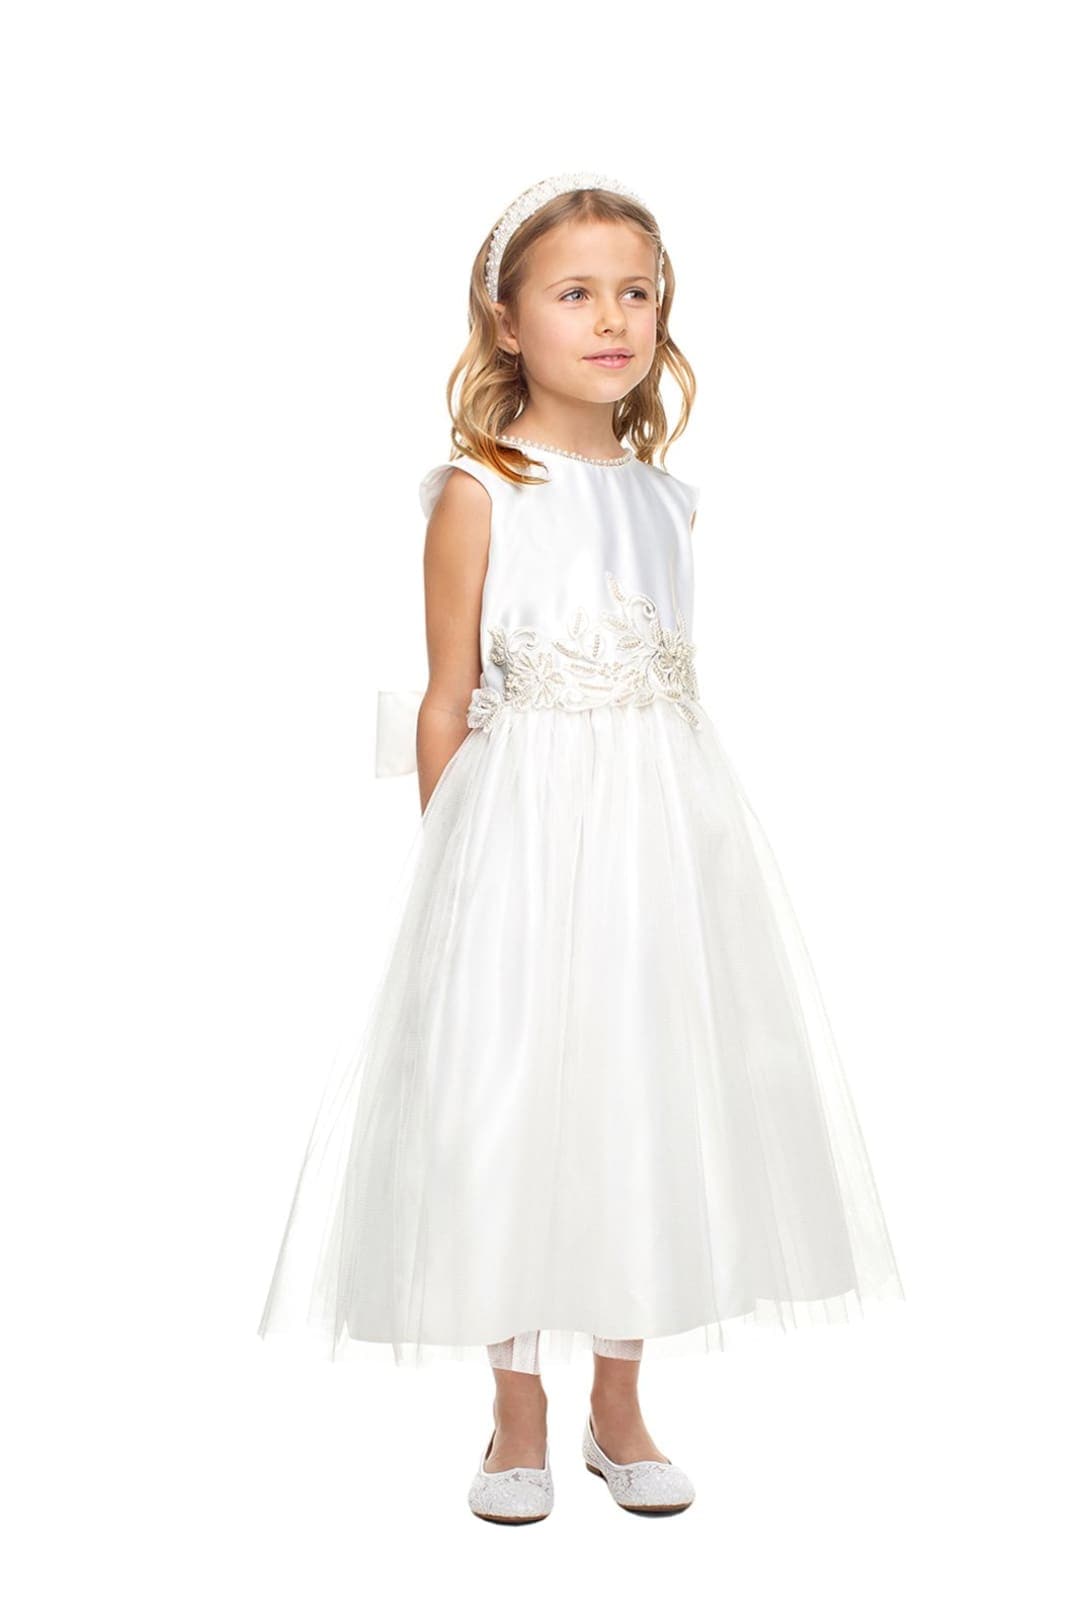 Sweet Flower Girl Pearl Dress - LAK850 - White / 2